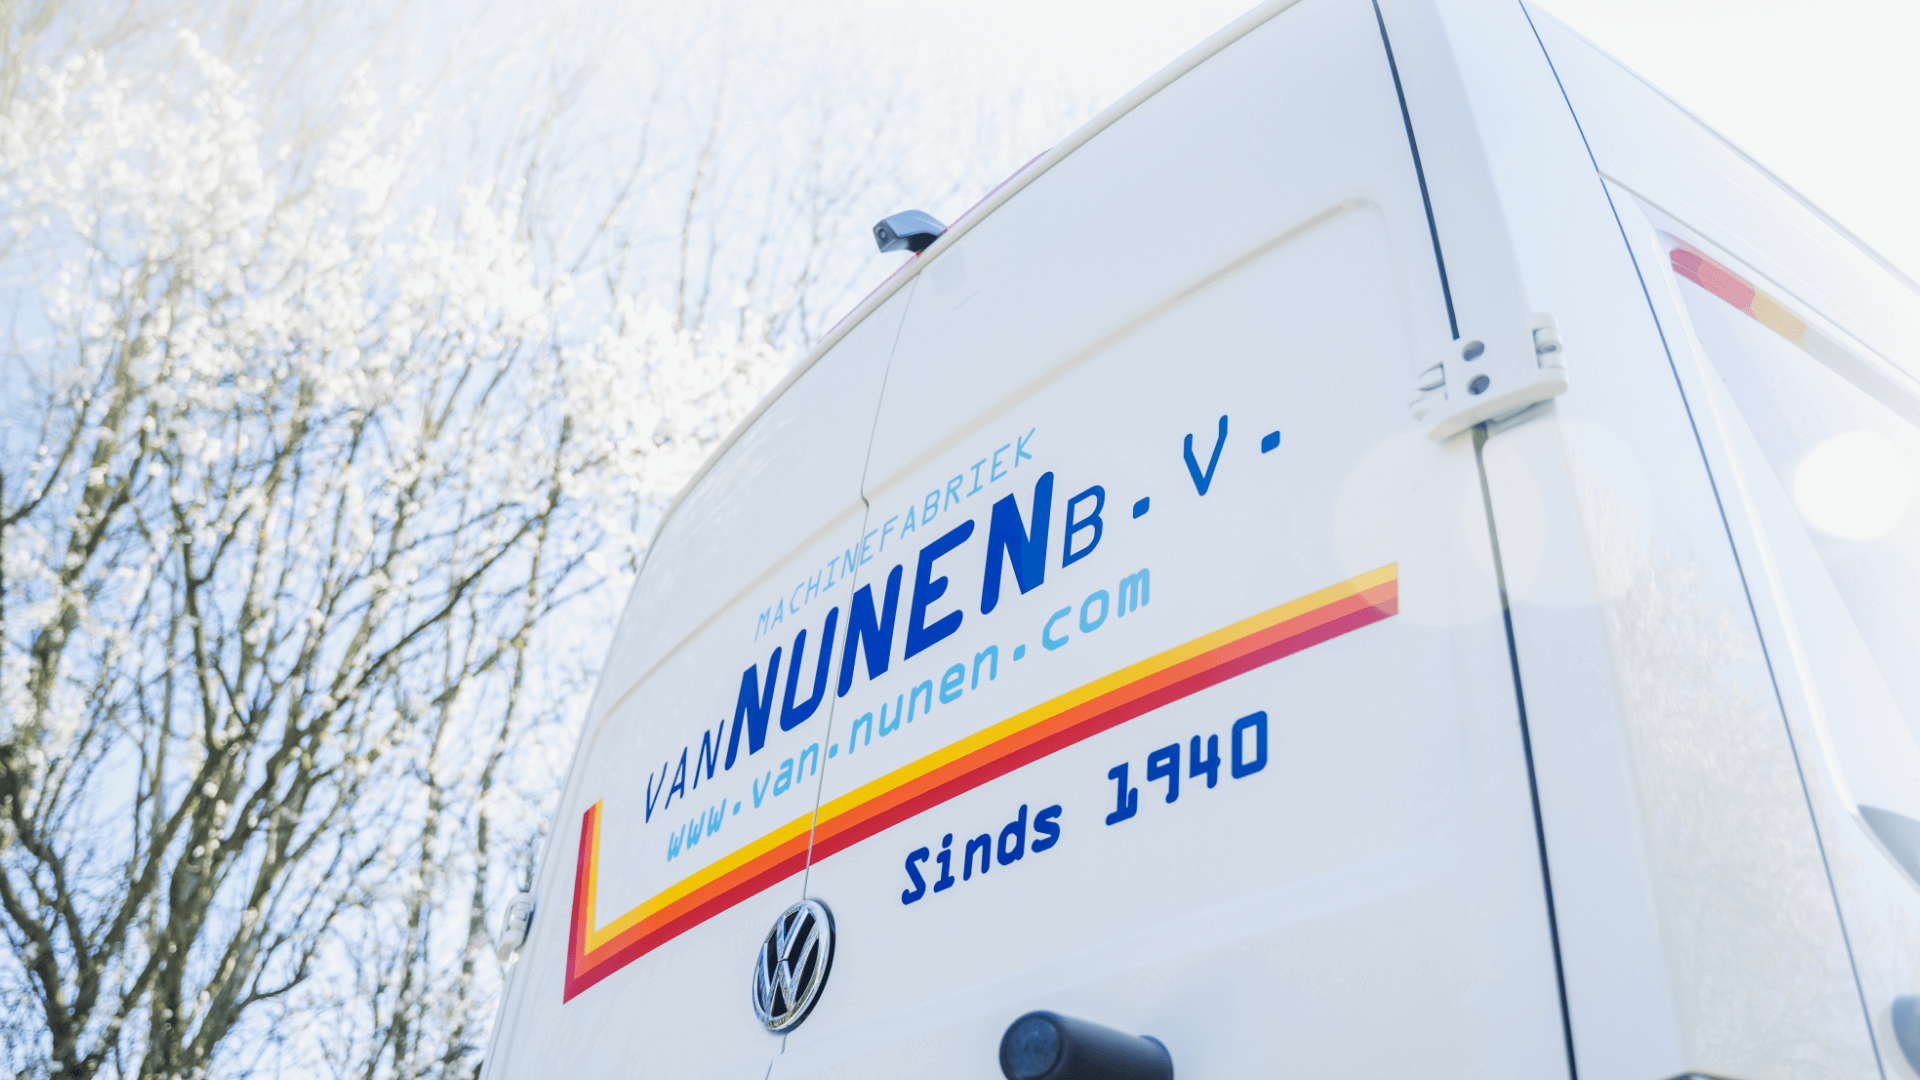 Hoogwaardige bedrijfswagens voor professioneel en zakelijk gebruik in Noord-Brabant